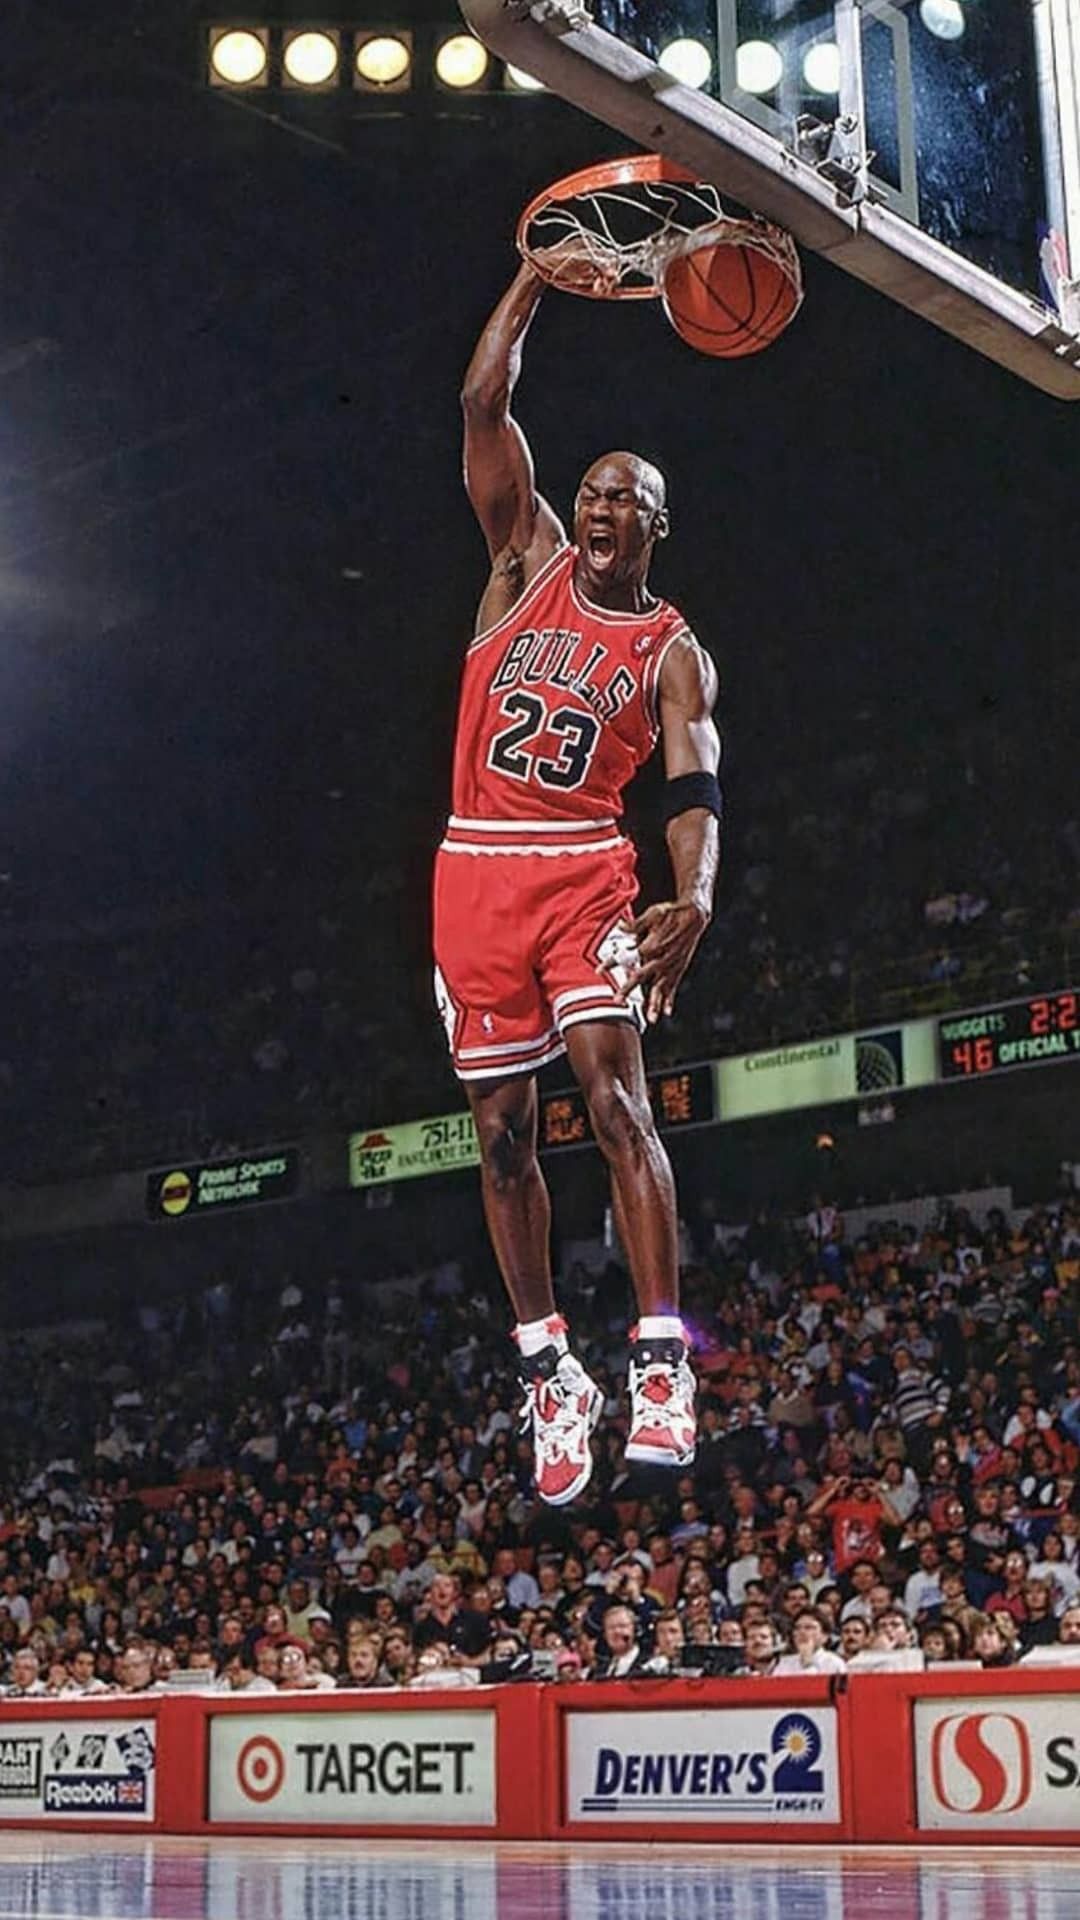 Wallpaper Michael Jordan